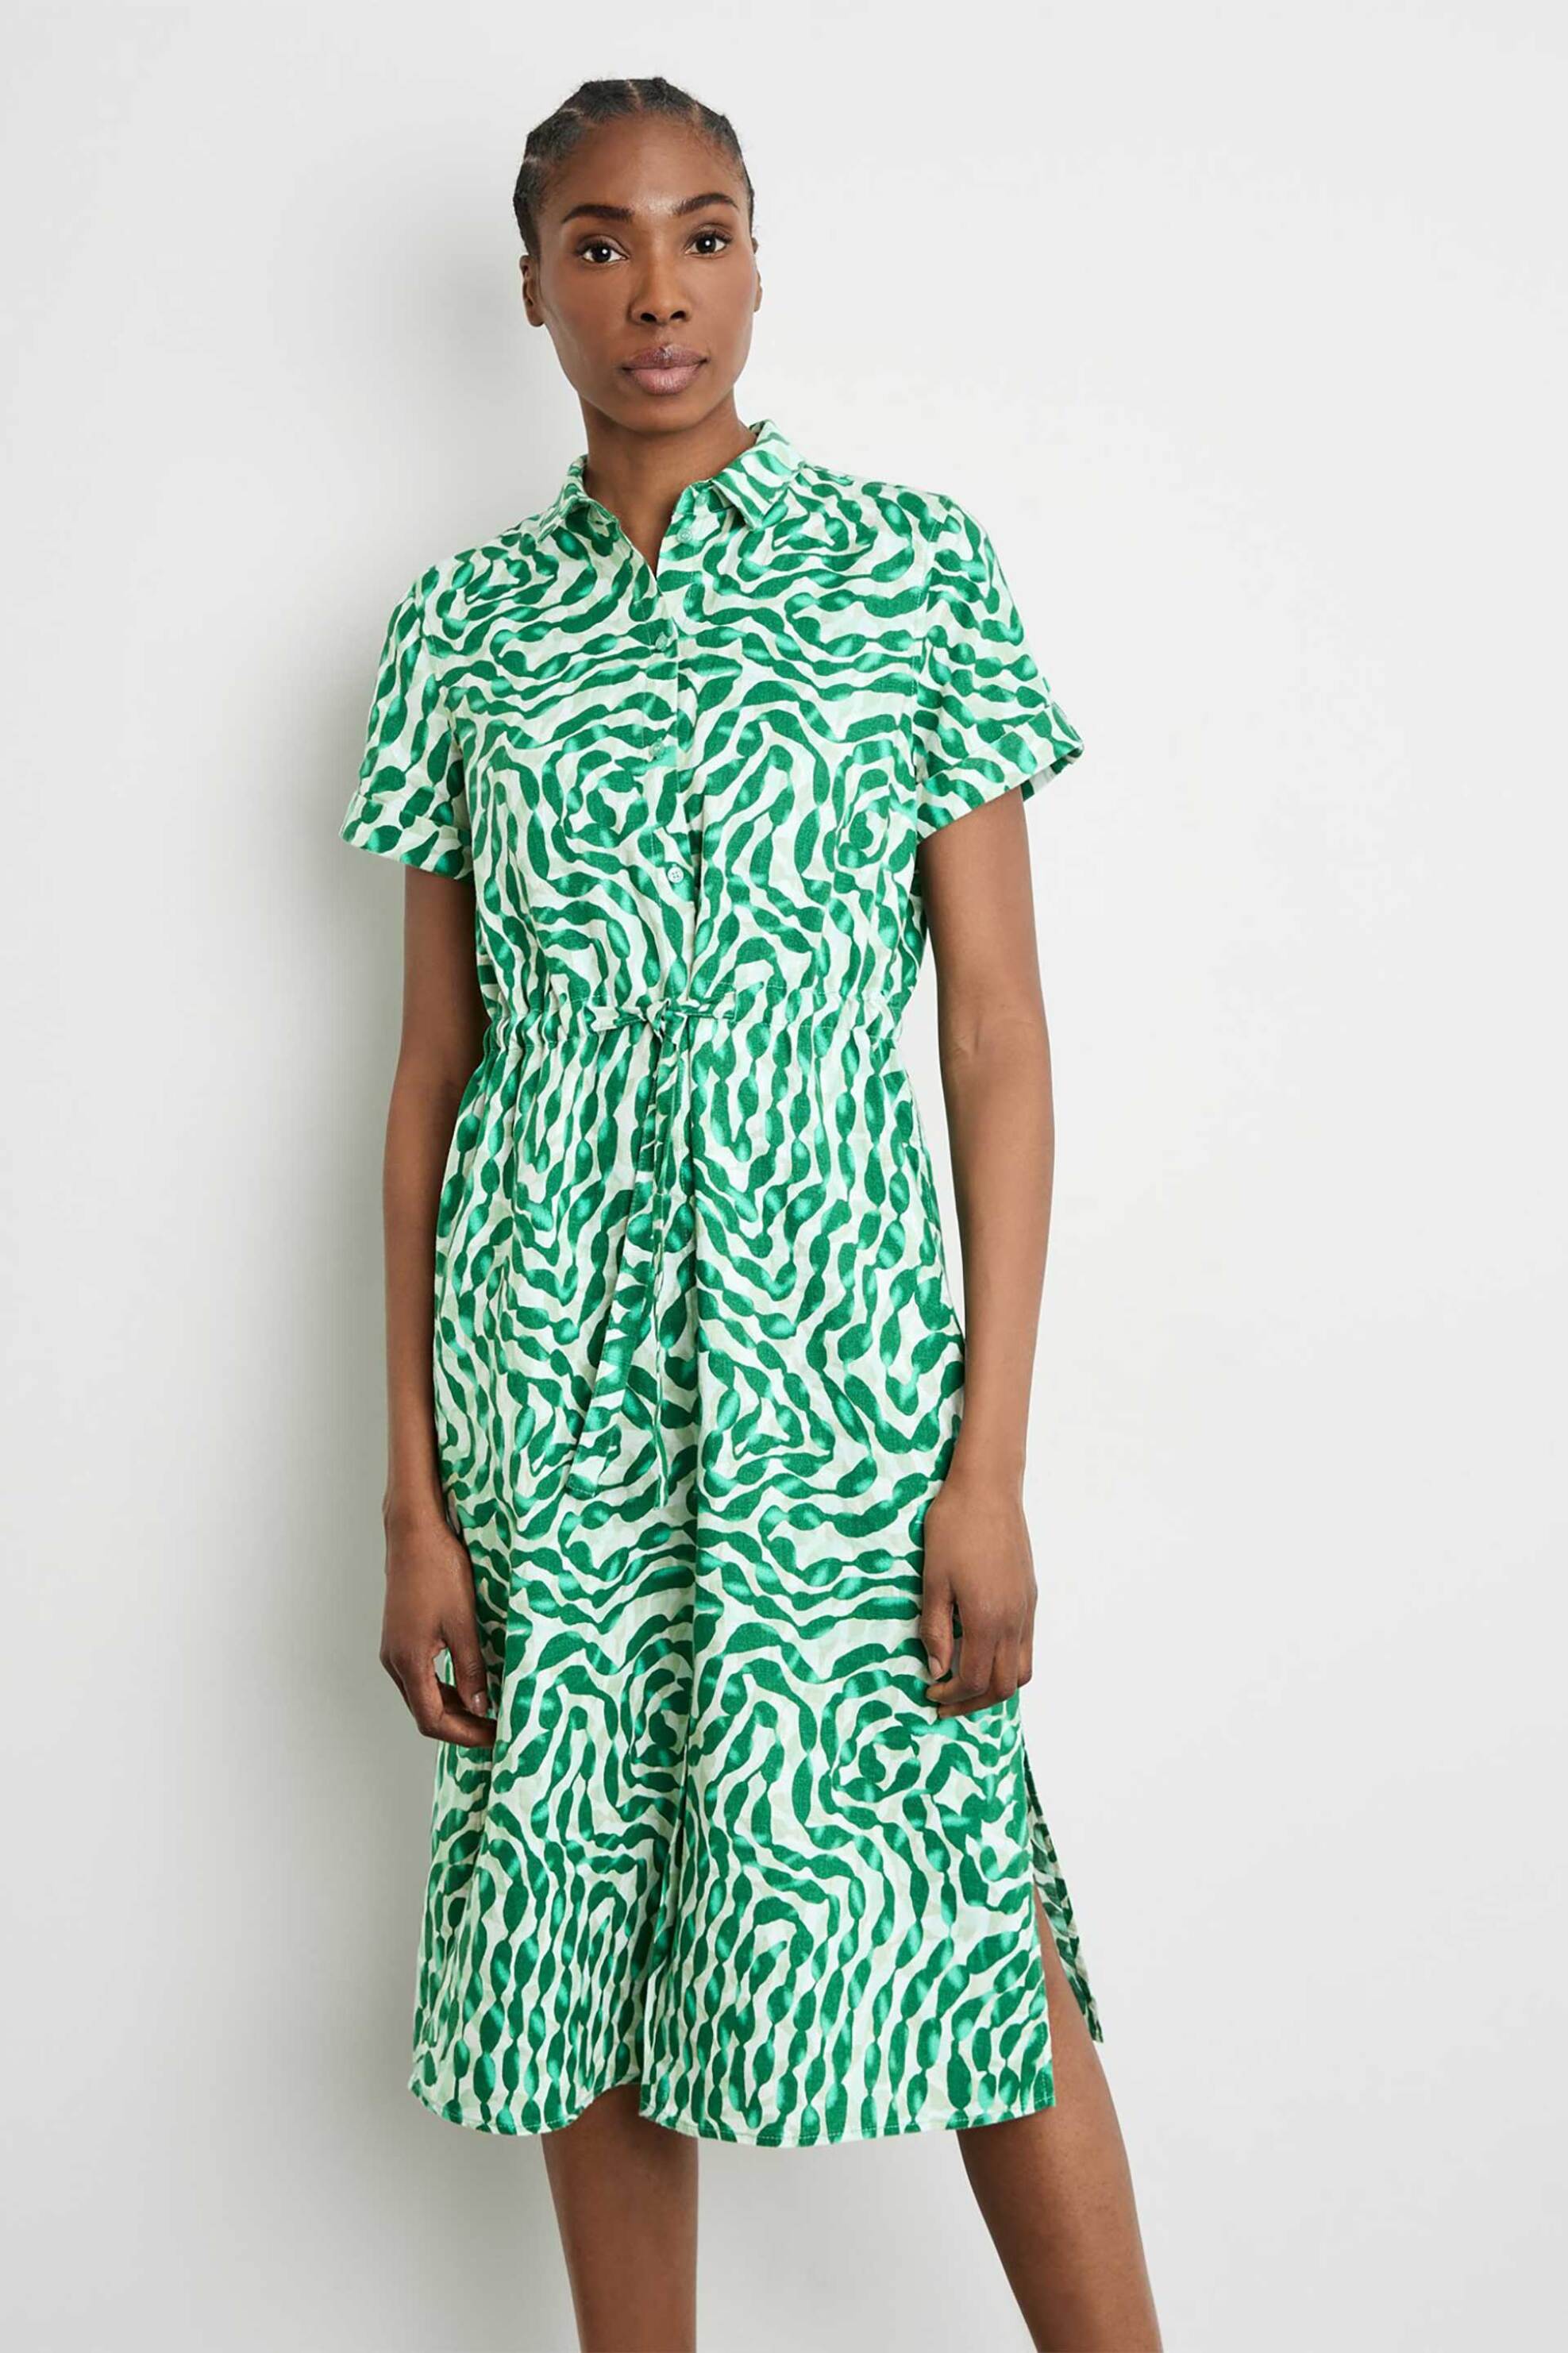 Γυναικεία Ρούχα & Αξεσουάρ > Γυναικεία Ρούχα > Γυναικεία Φορέματα > Γυναικεία Φορέματα Midi Gerry Weber γυναικείο midi φόρεμα σεμιζιέ από λινάρι με all-over print Casual Fit - 285009-66224 Πράσινο